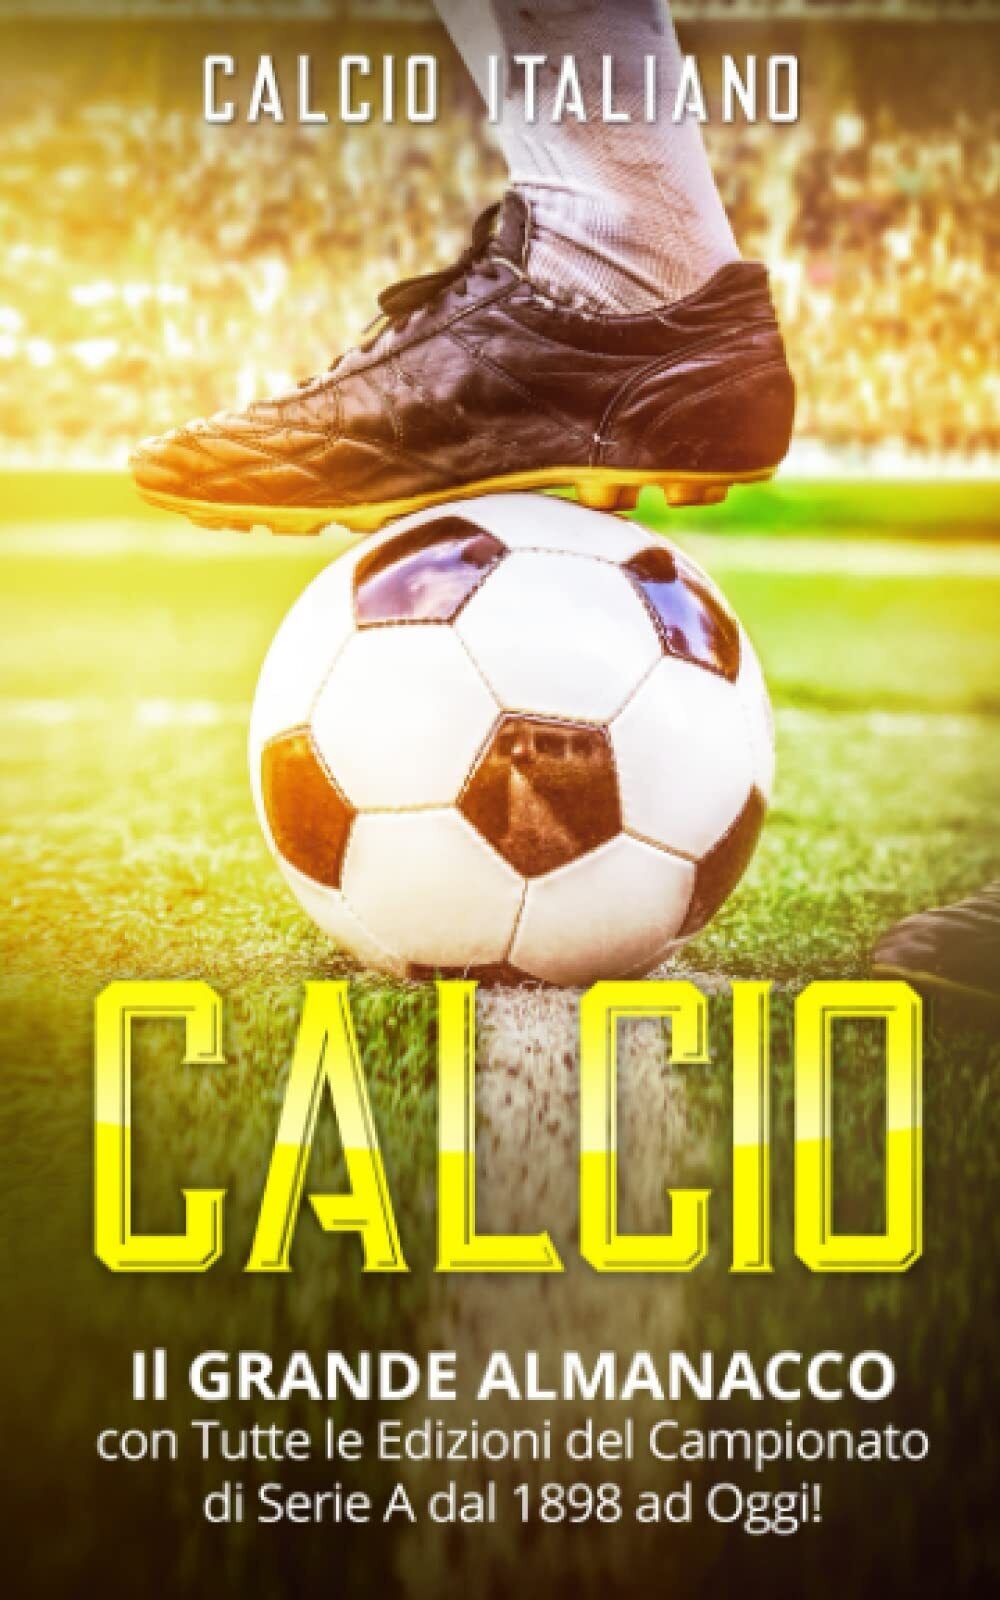 CALCIO: Il GRANDE ALMANACCO - Calcio Italiano - ?Independently published, 2021